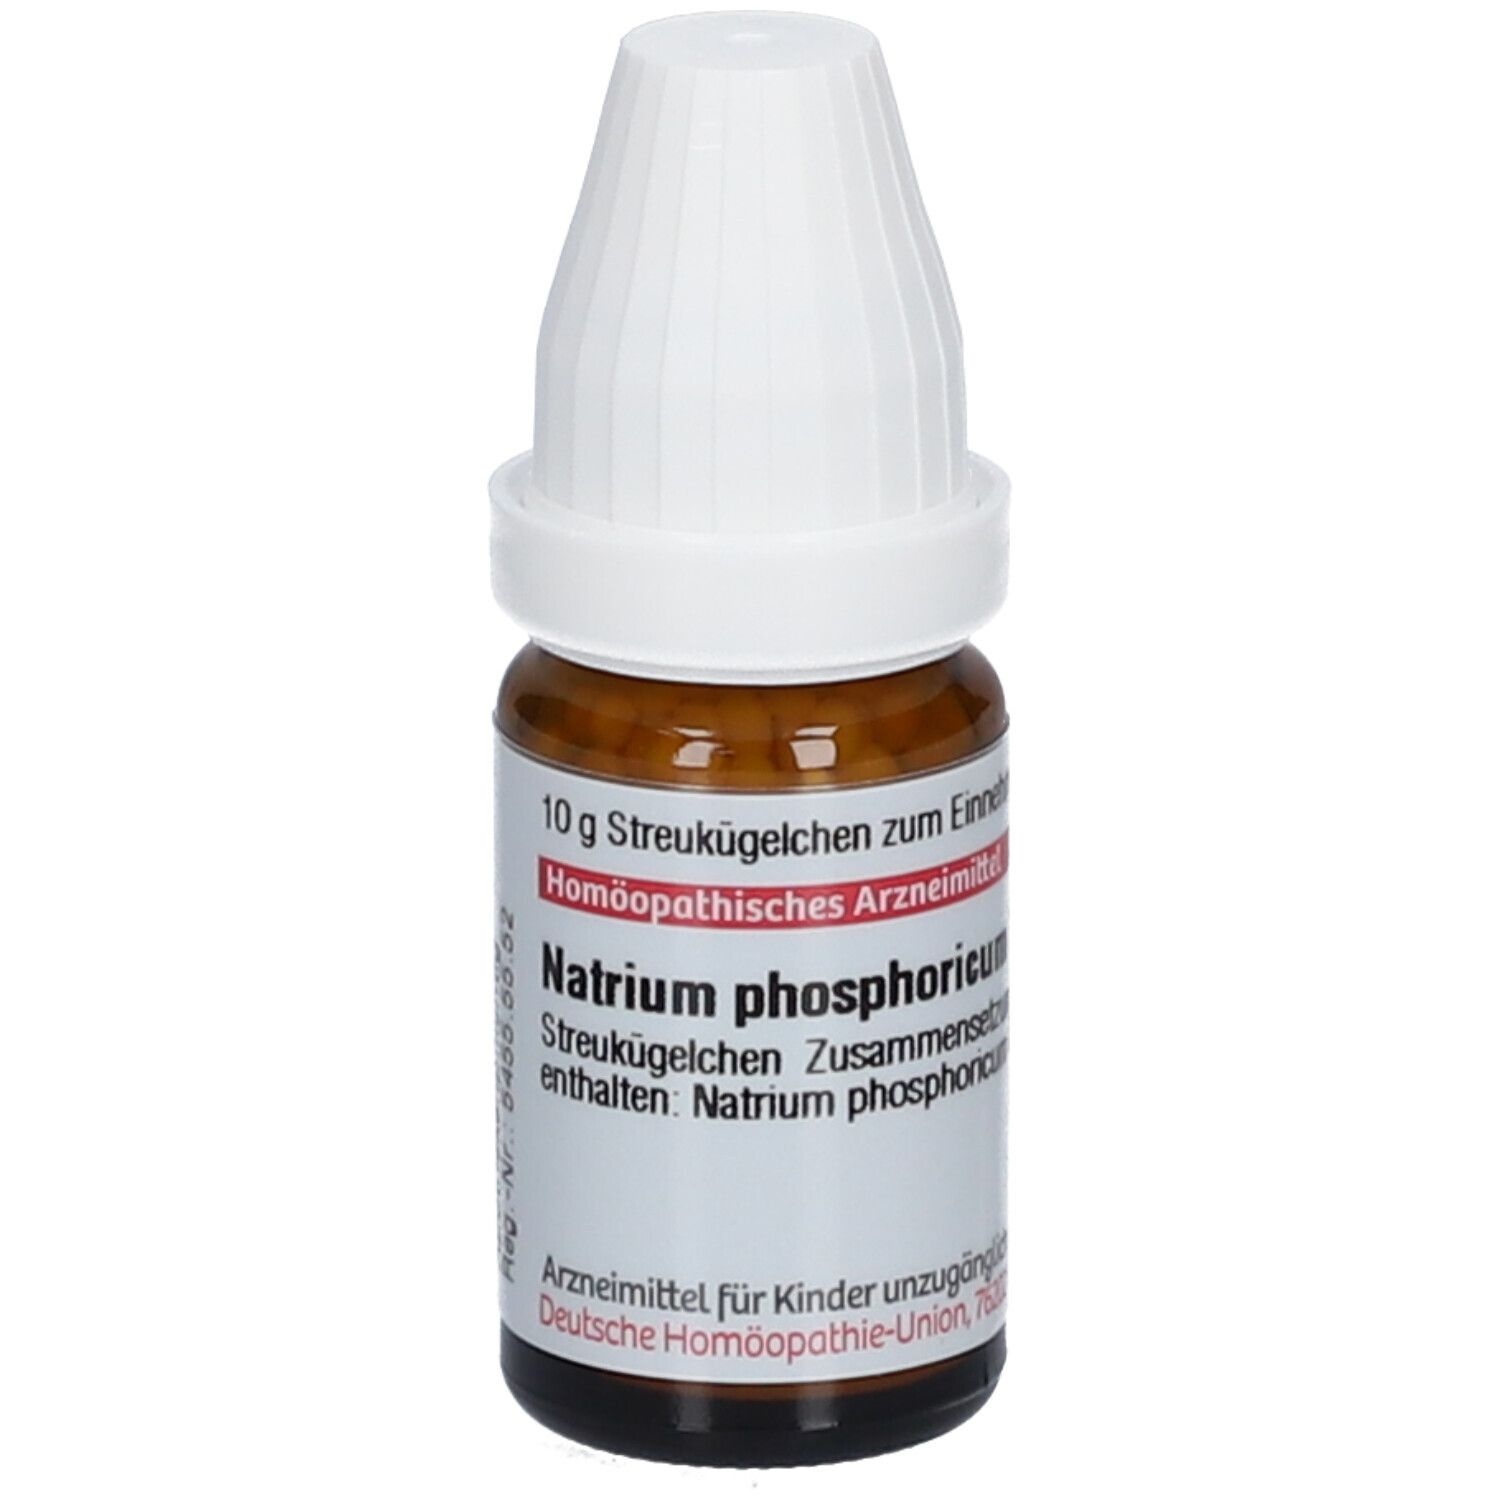 DHU Natrium Phosphoricum D6